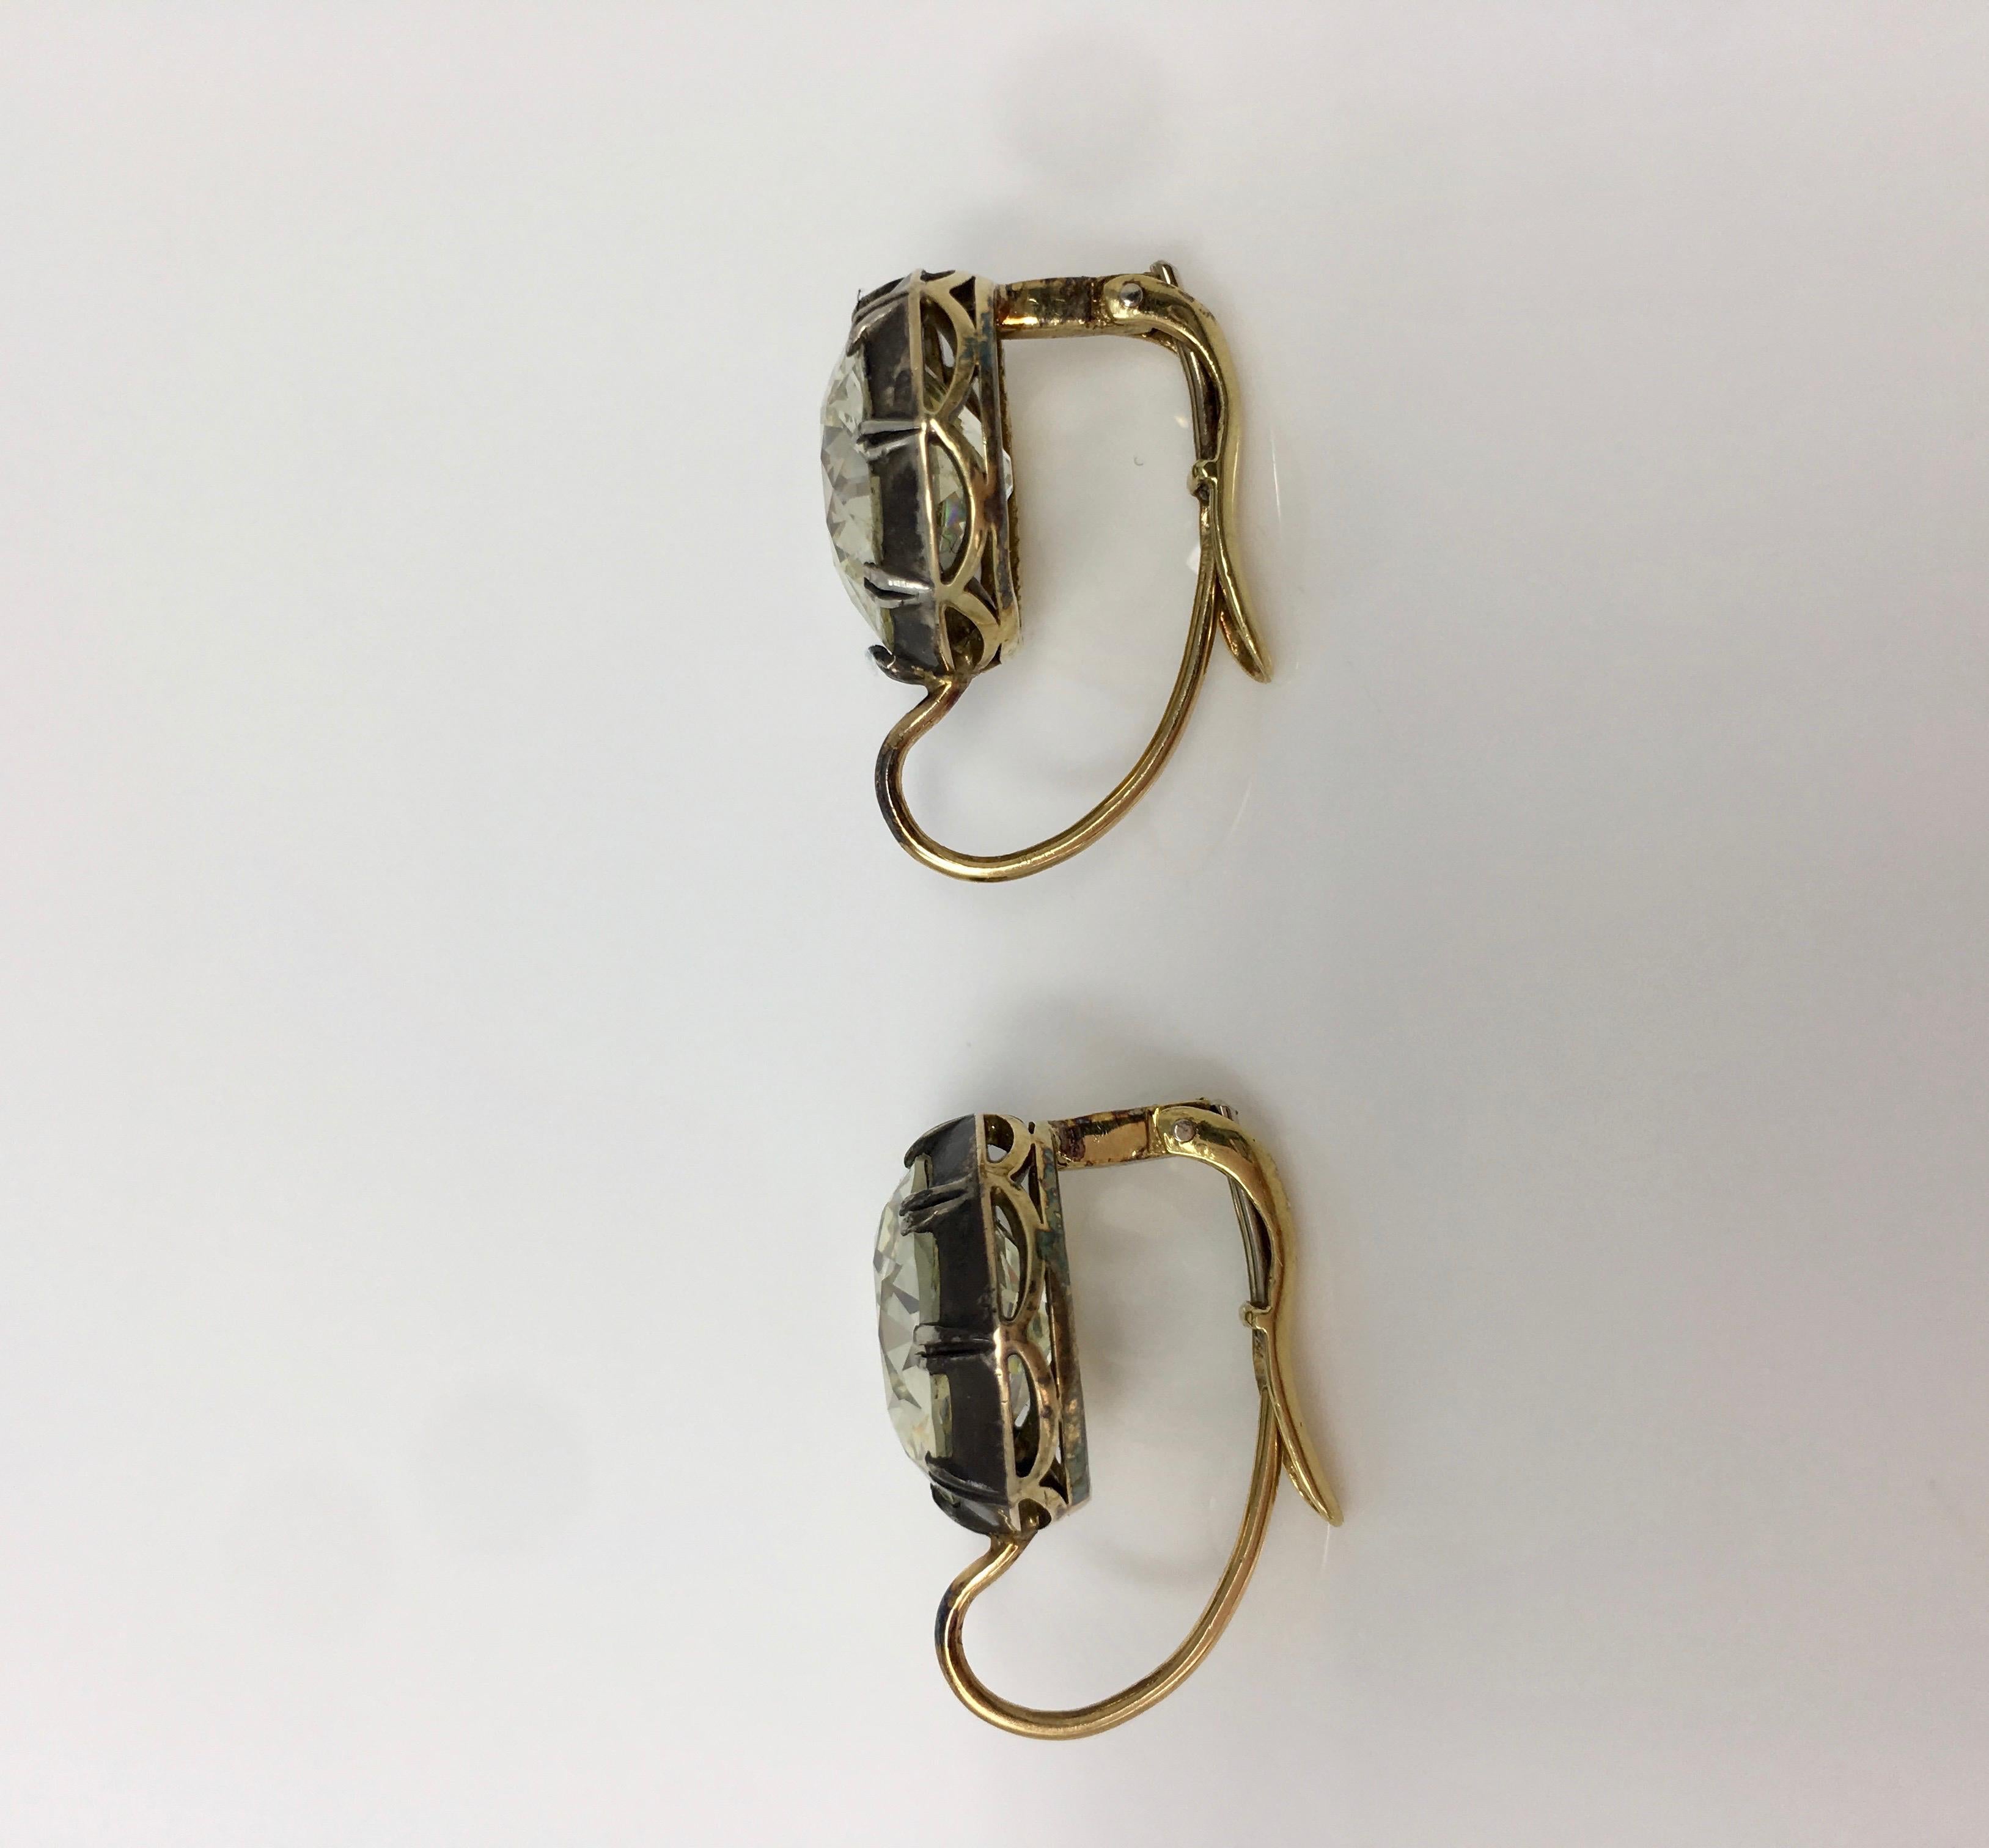 11.67 Carat Old European Cut Diamond Antique Style Dangle Earrings In 18 K Gold  2